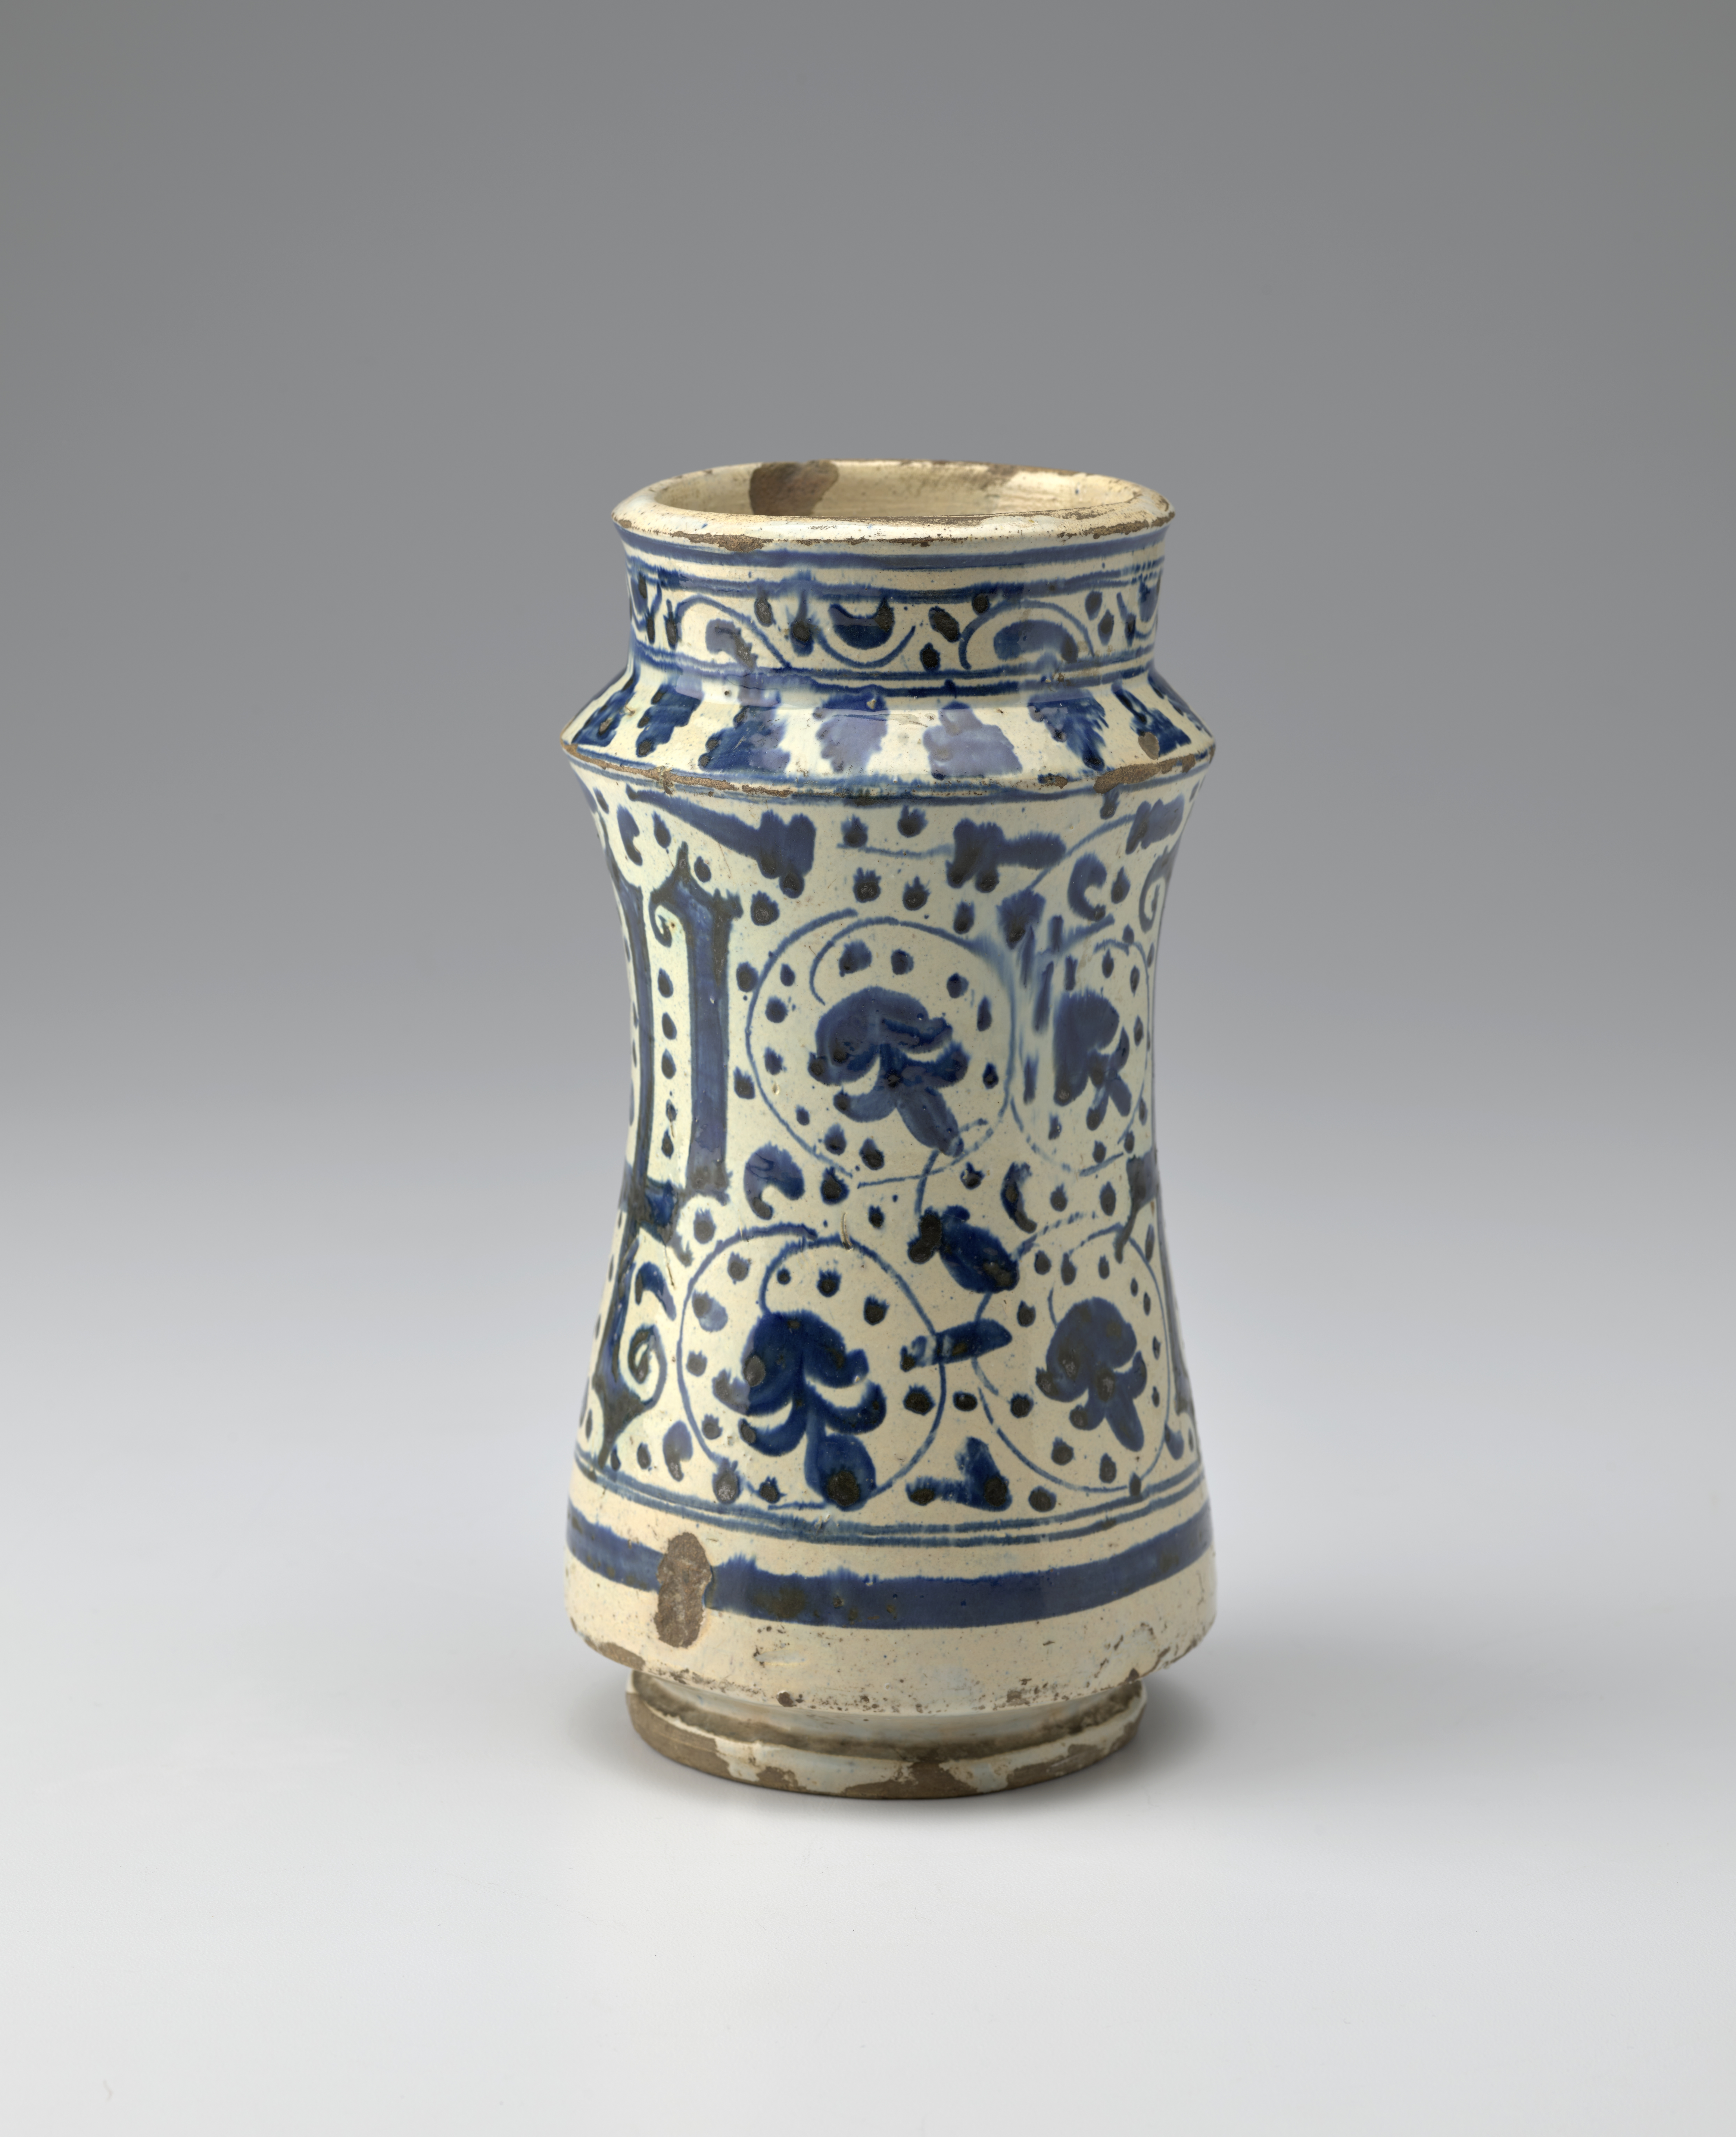 Jarra de cerámica azul y blanca decorada con formas de letras góticas y motivos florales.